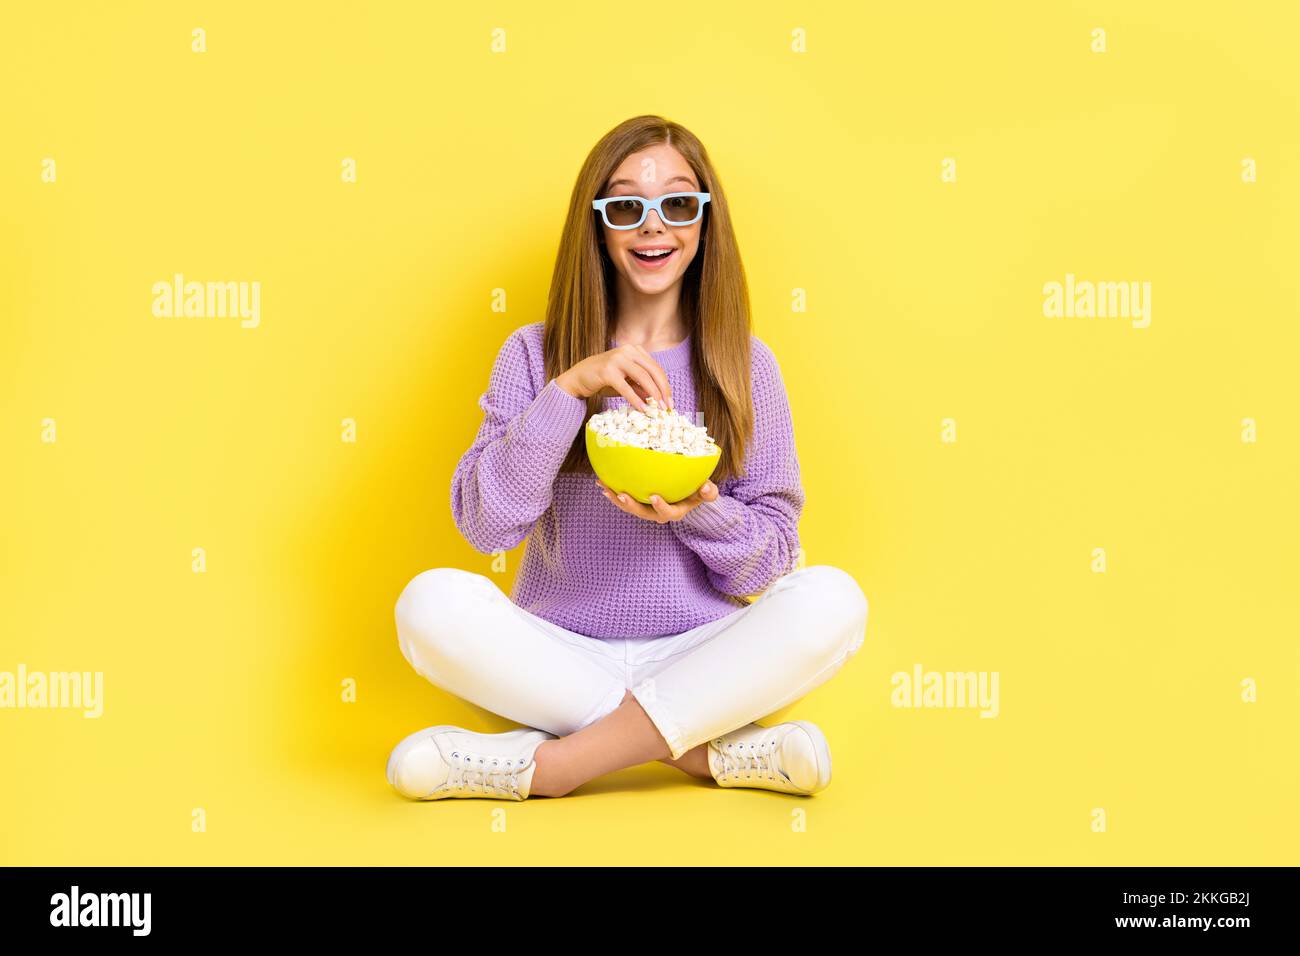 Porträtfoto-Kadre eines jungen Studentinnen trägt einen grünen Pullover im Papierrahmen beliebter Blogger umarmt dich freundlich isoliert auf blauem Hintergrund Stockfoto